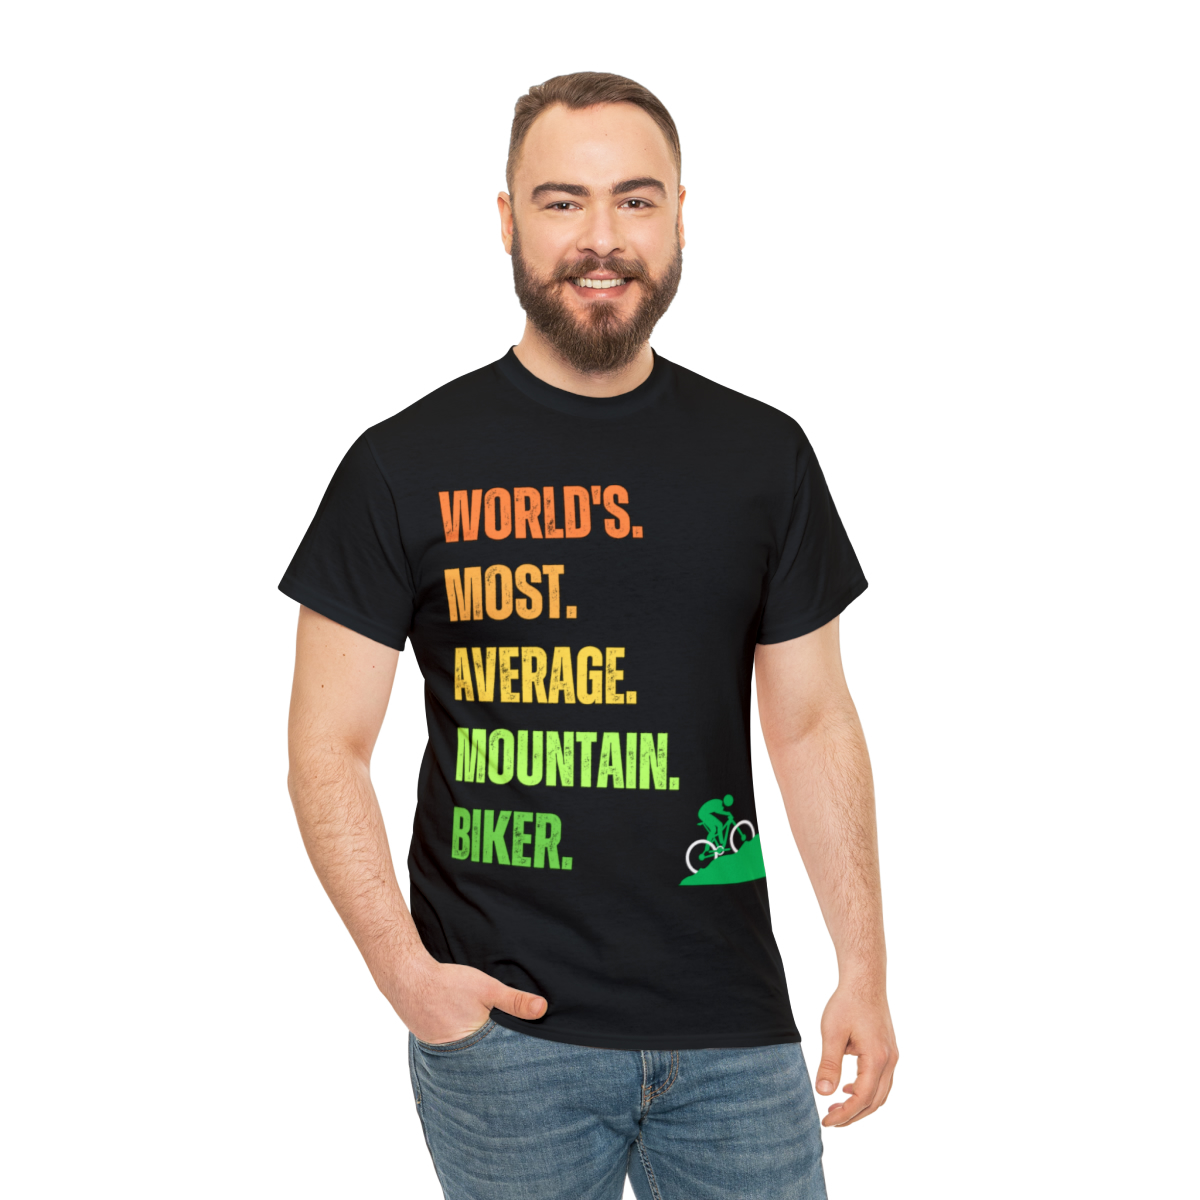 mountain biking t-shirts